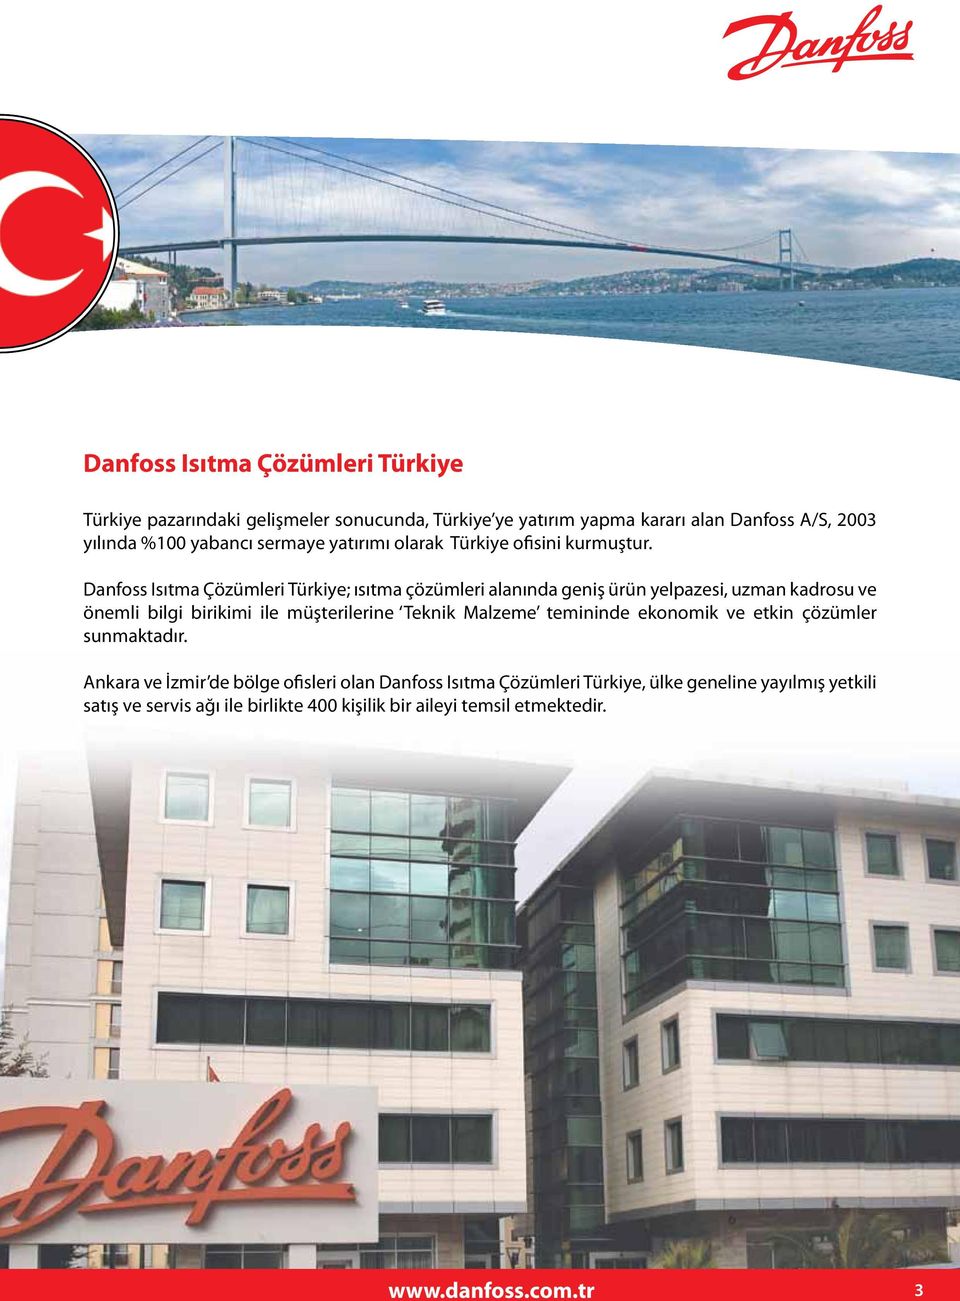 Danfoss Isıtma Çözümleri Türkiye; ısıtma çözümleri alanında geniş ürün yelpazesi, uzman kadrosu ve önemli bilgi birikimi ile müşterilerine Teknik